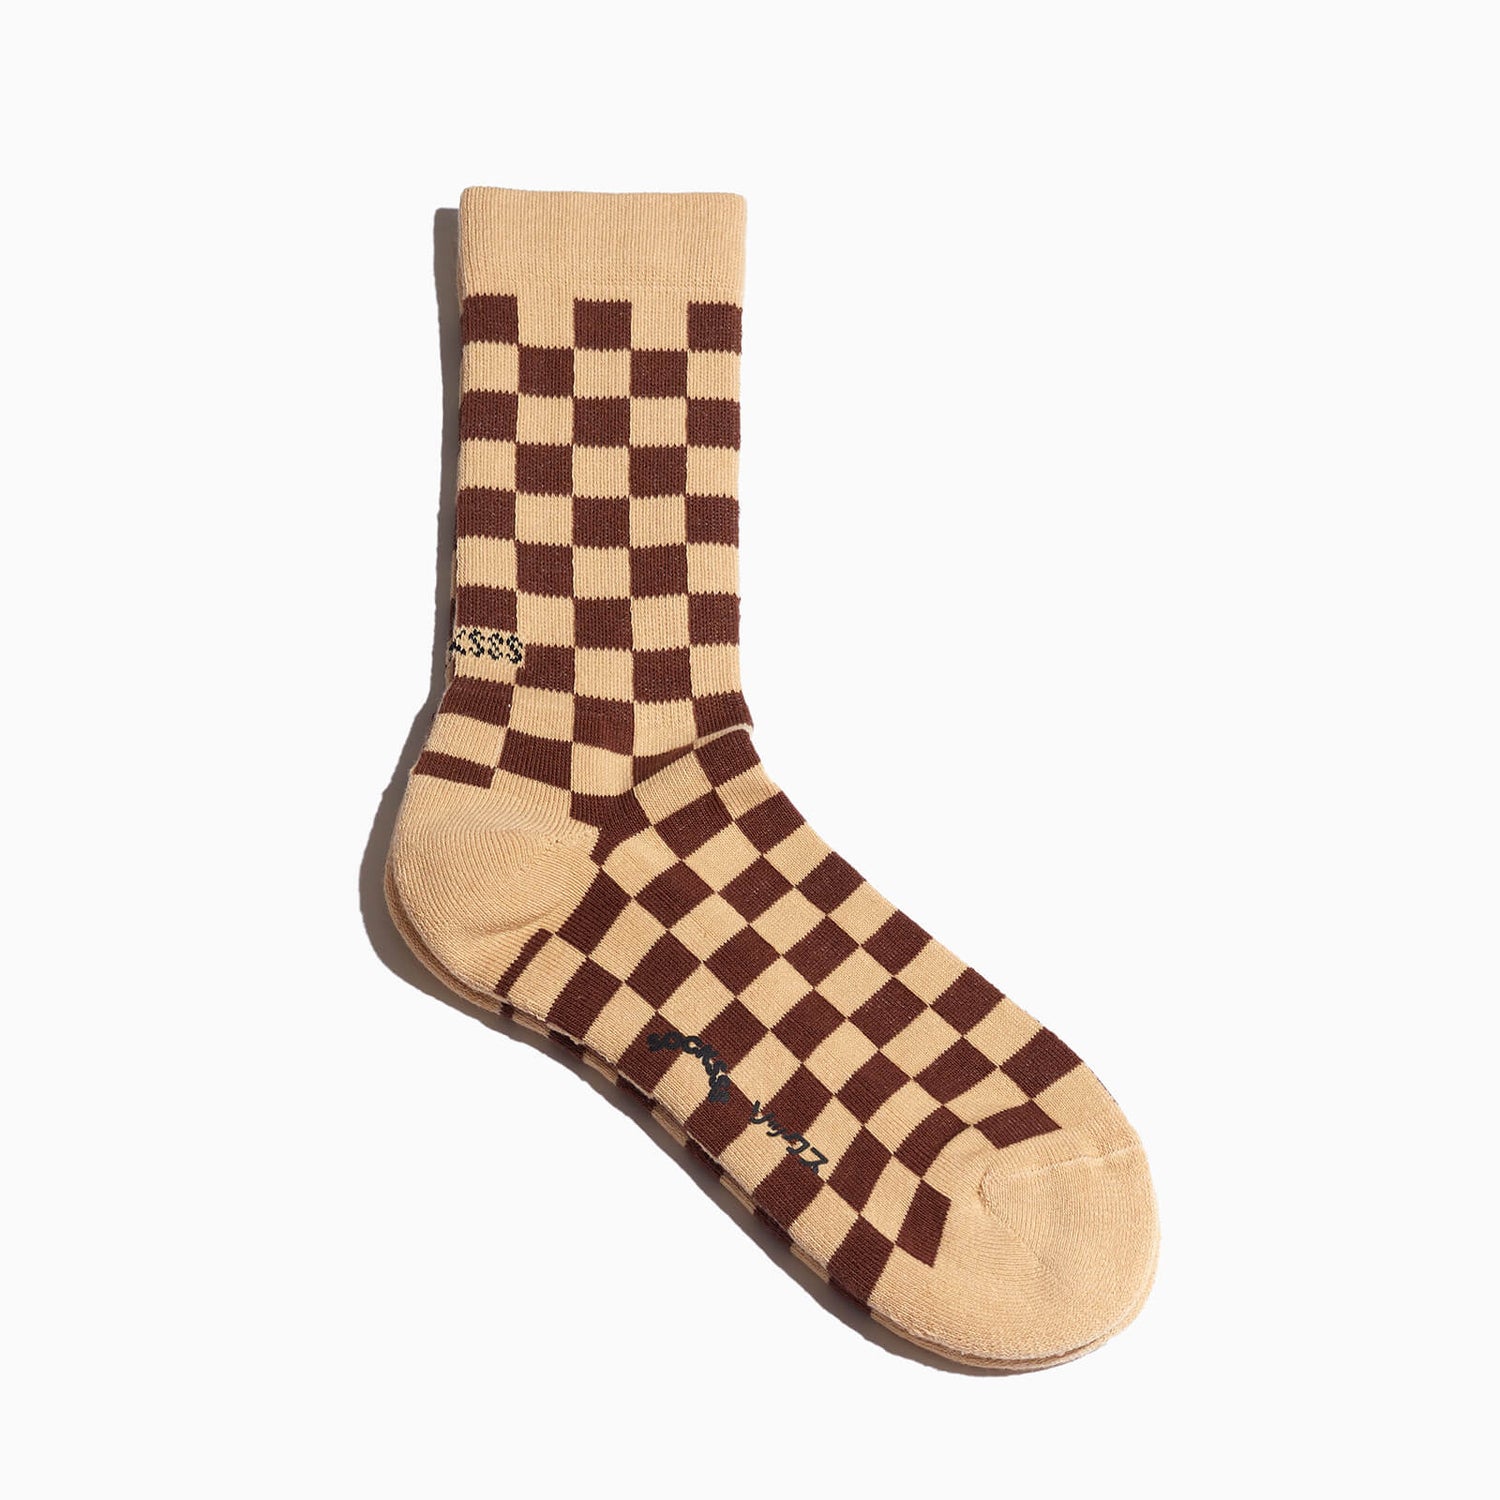 SOCKSSS Men's Tennis Squares Socks - Cinnamon Spice - EU 36-40/UK 3-6.5